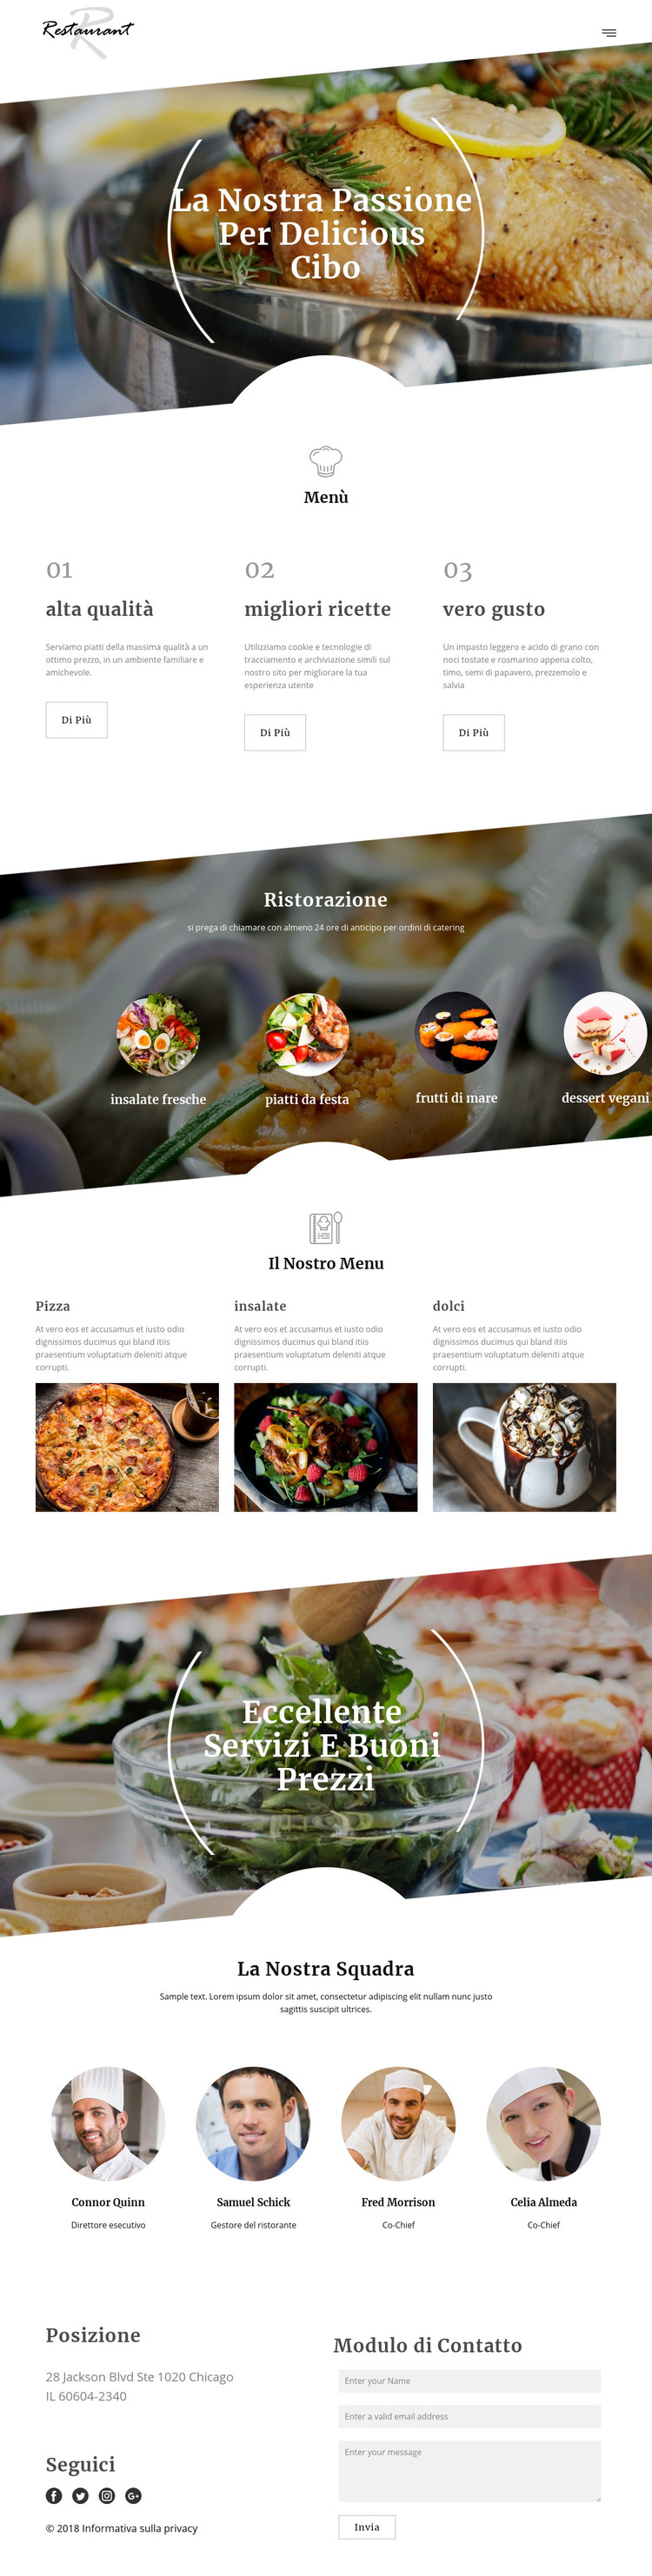 Ricette dello chef esecutivo Modello HTML